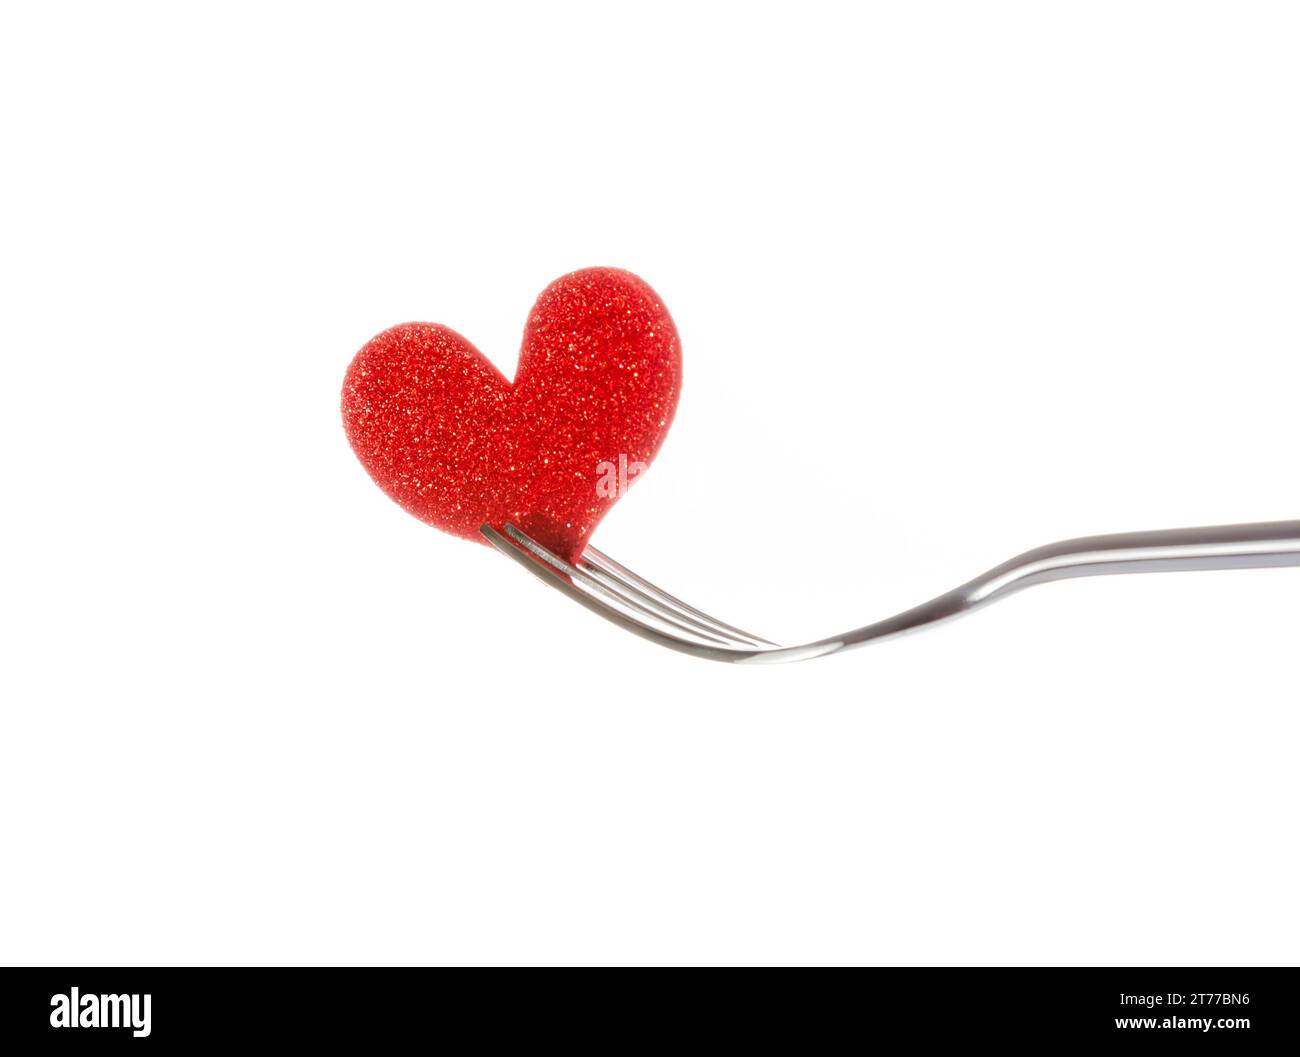 coeur rouge décoratif près d'une fourchette sur fond blanc avec espace pour le texte, concept dîner de saint valentin Banque D'Images